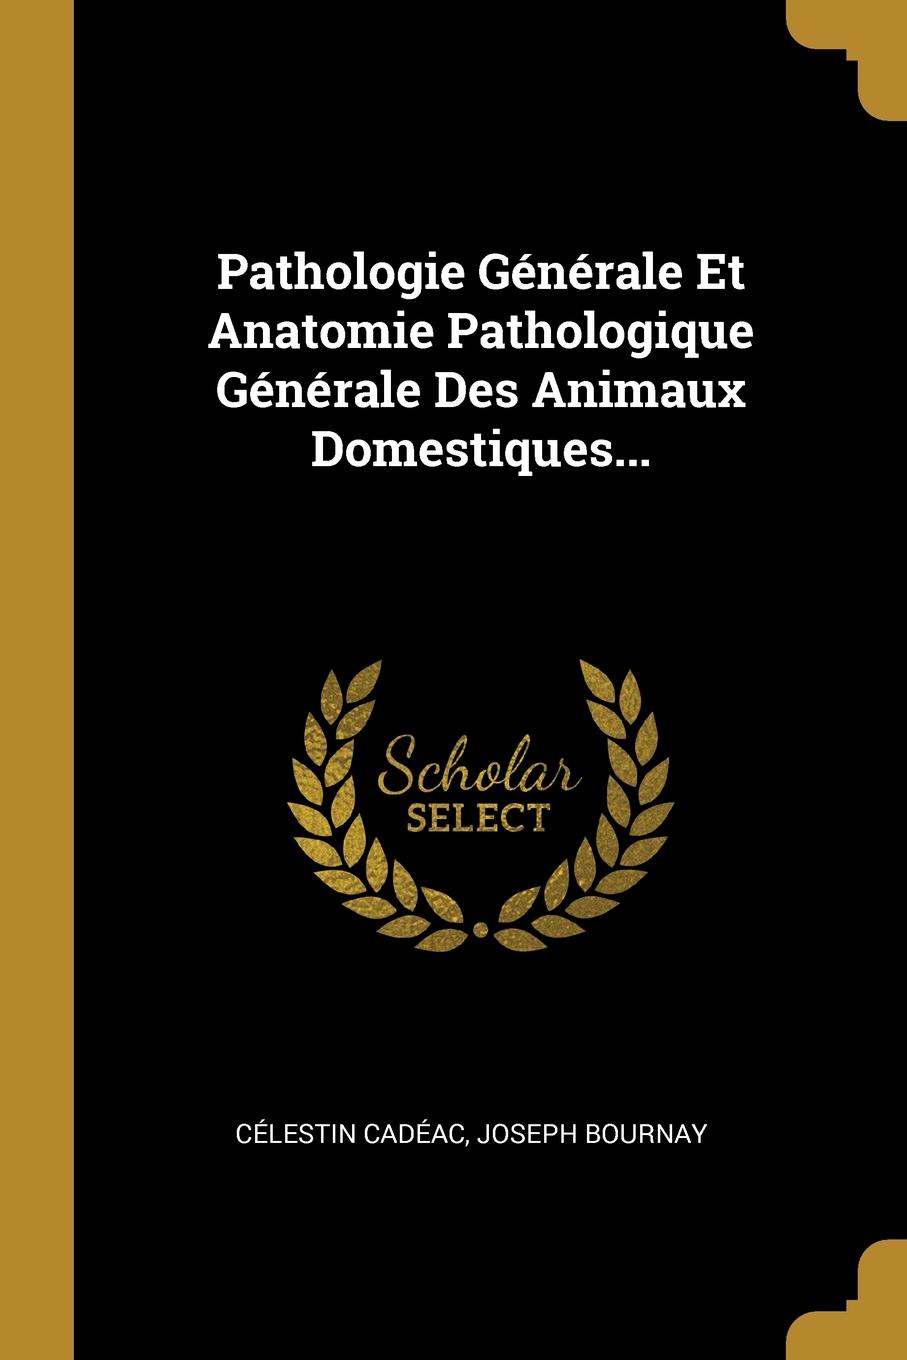 Pathologie Generale Et Anatomie Pathologique Generale Des Animaux Domestiques...